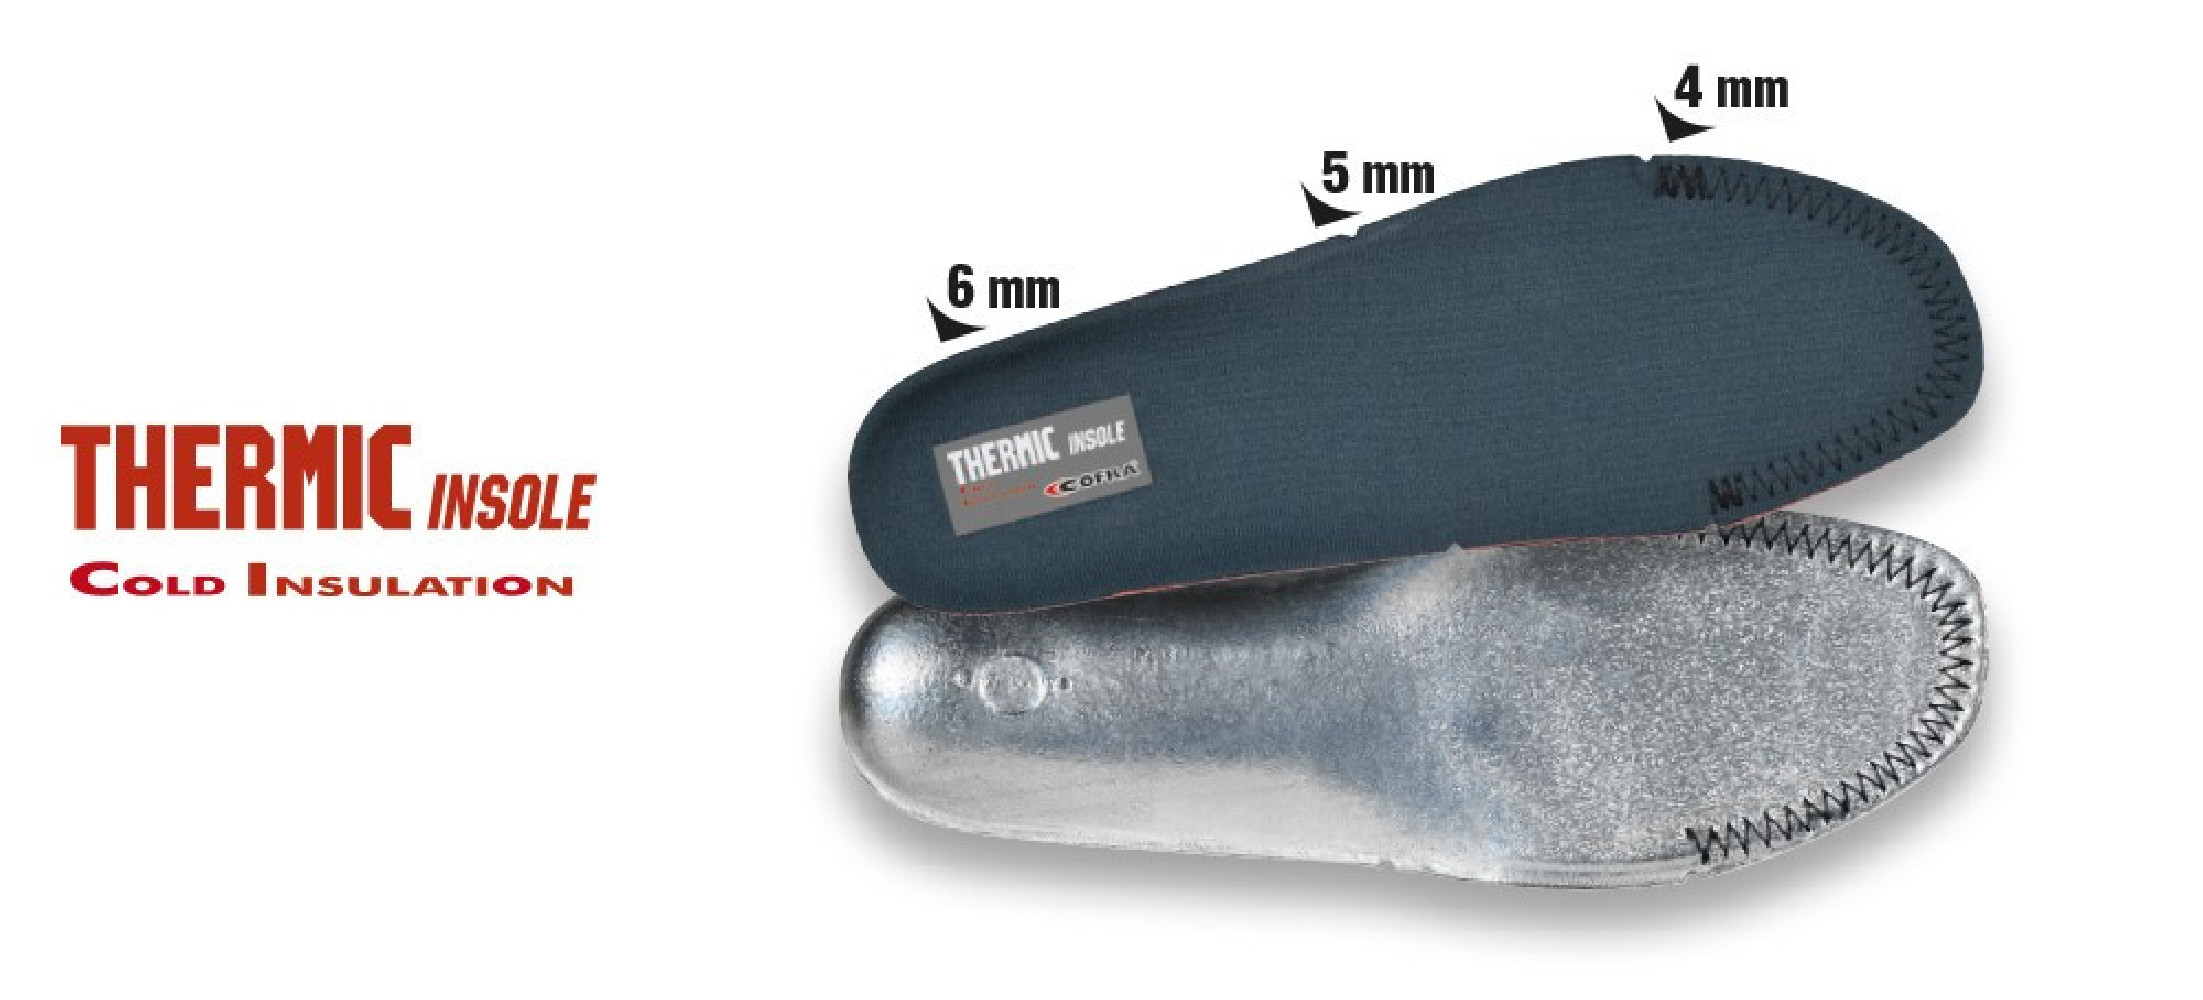 Wkładki do butów Cofra THERMIC INSOLE COLD INSULATION